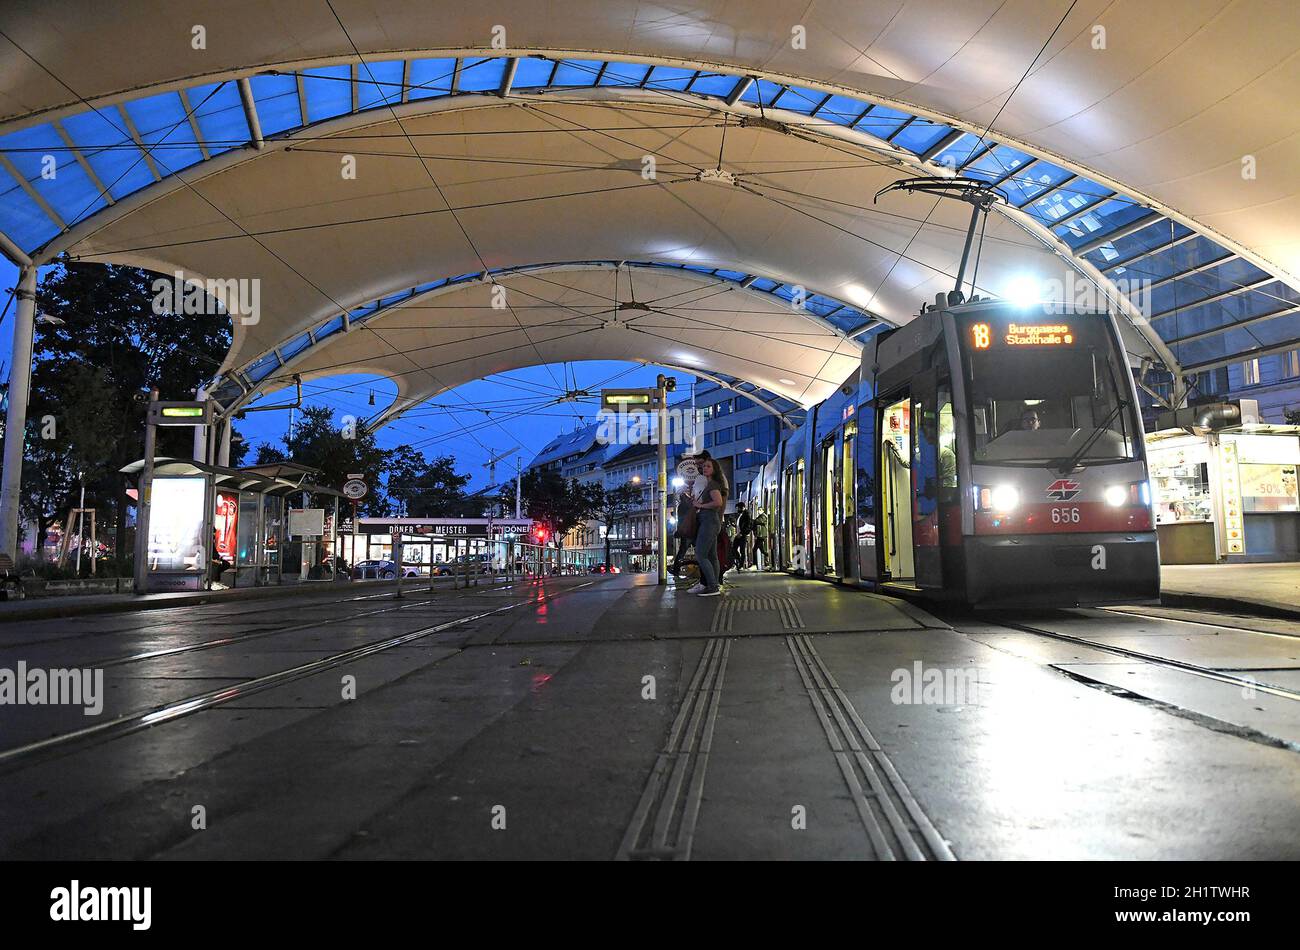 Straßenbahn-Haltestelle in Wien am Abend, Österreich, Europa - Tram stop in Vienna in the evening, Austria, Europe Stock Photo